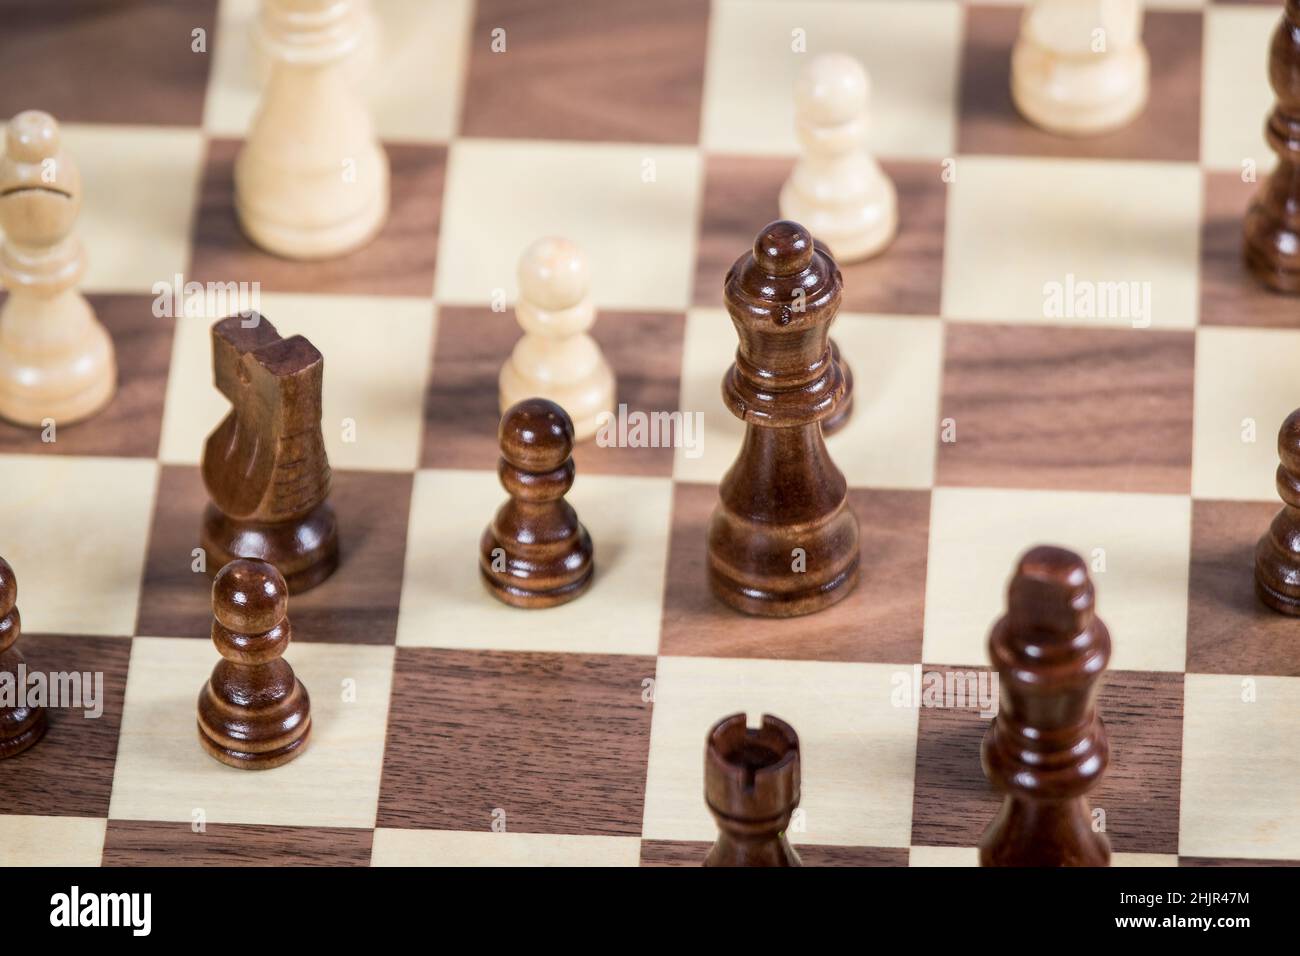 Tablero de ajedrez con Reina en foco, rodeado de peones, caballero y obispo Foto de stock